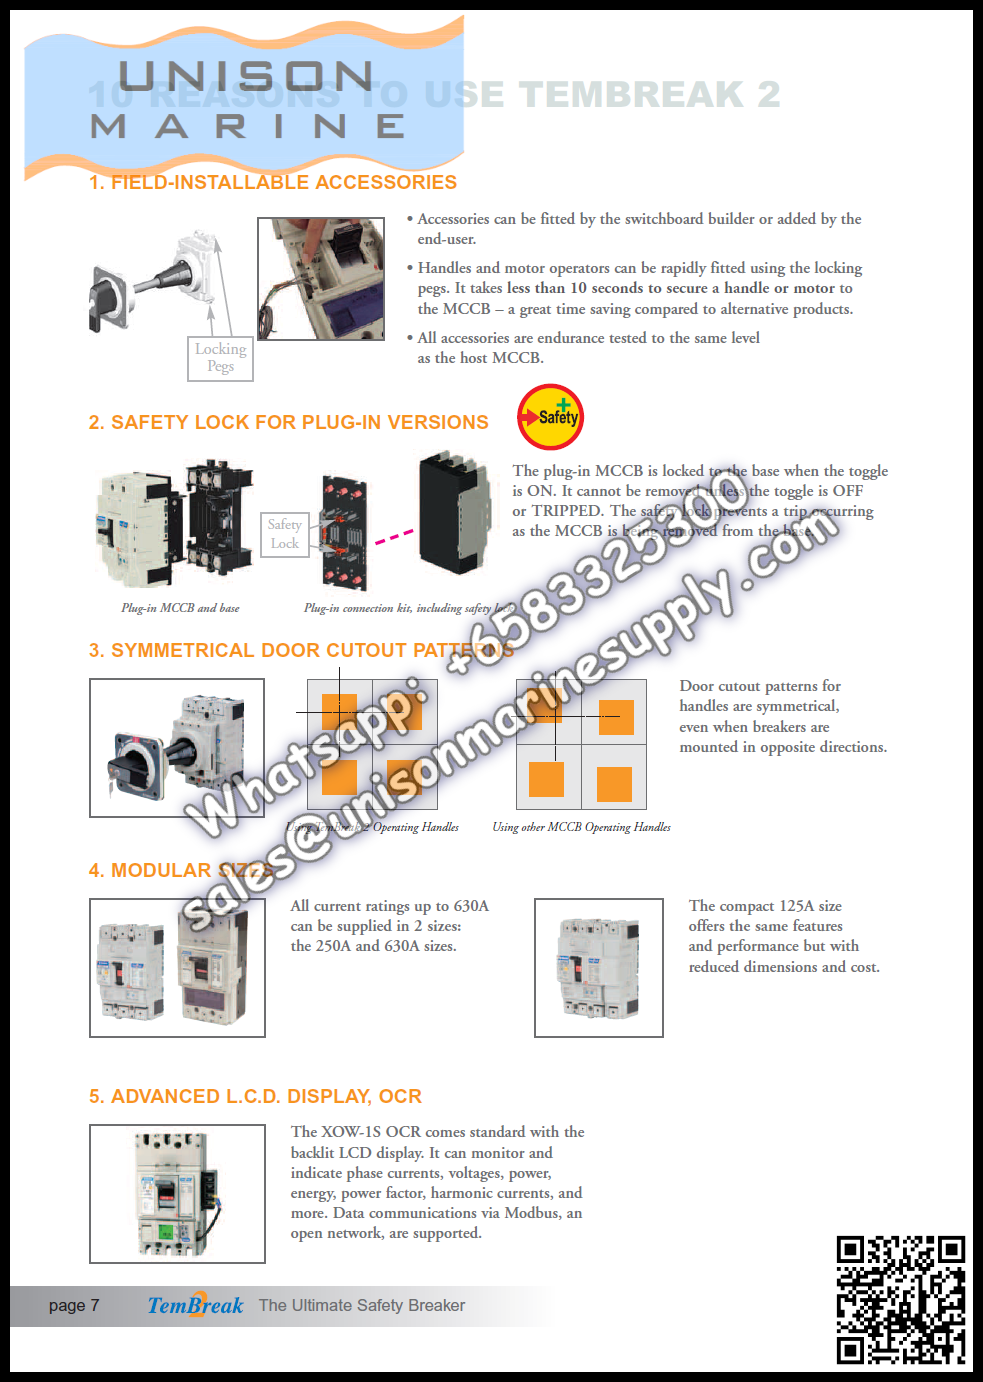 TRASAKI Marine Circuit Breaker (MCCB): S100-GF 100A 3P Fixed / Plug-in Type